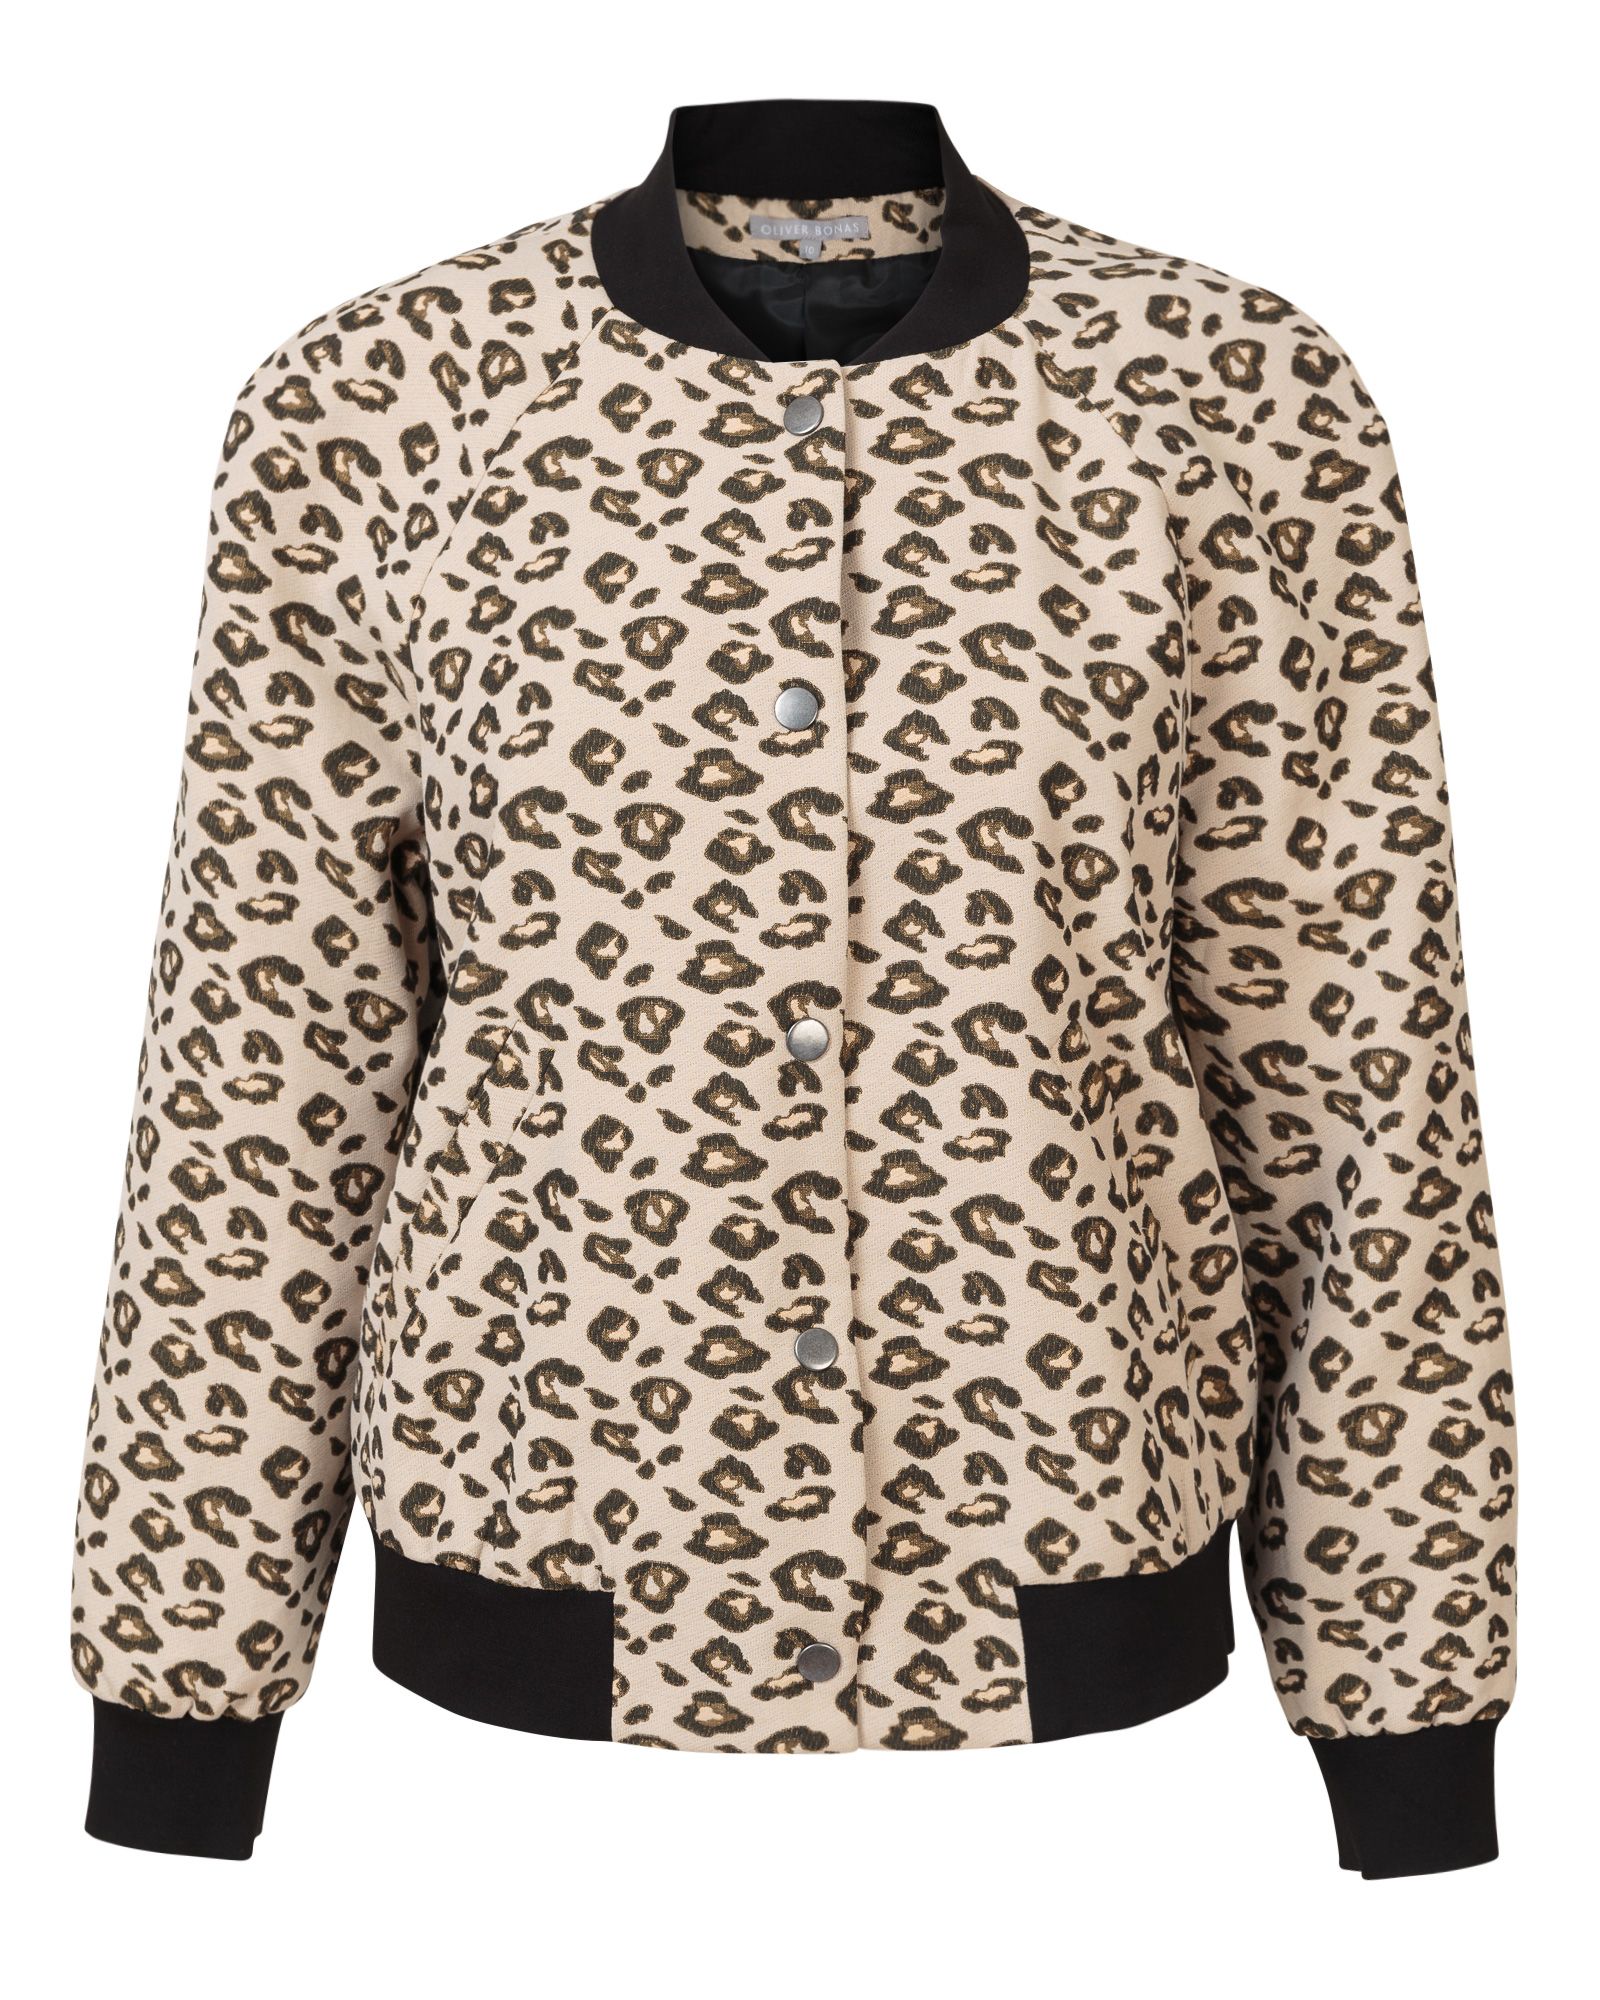 oliver bonas leopard dress